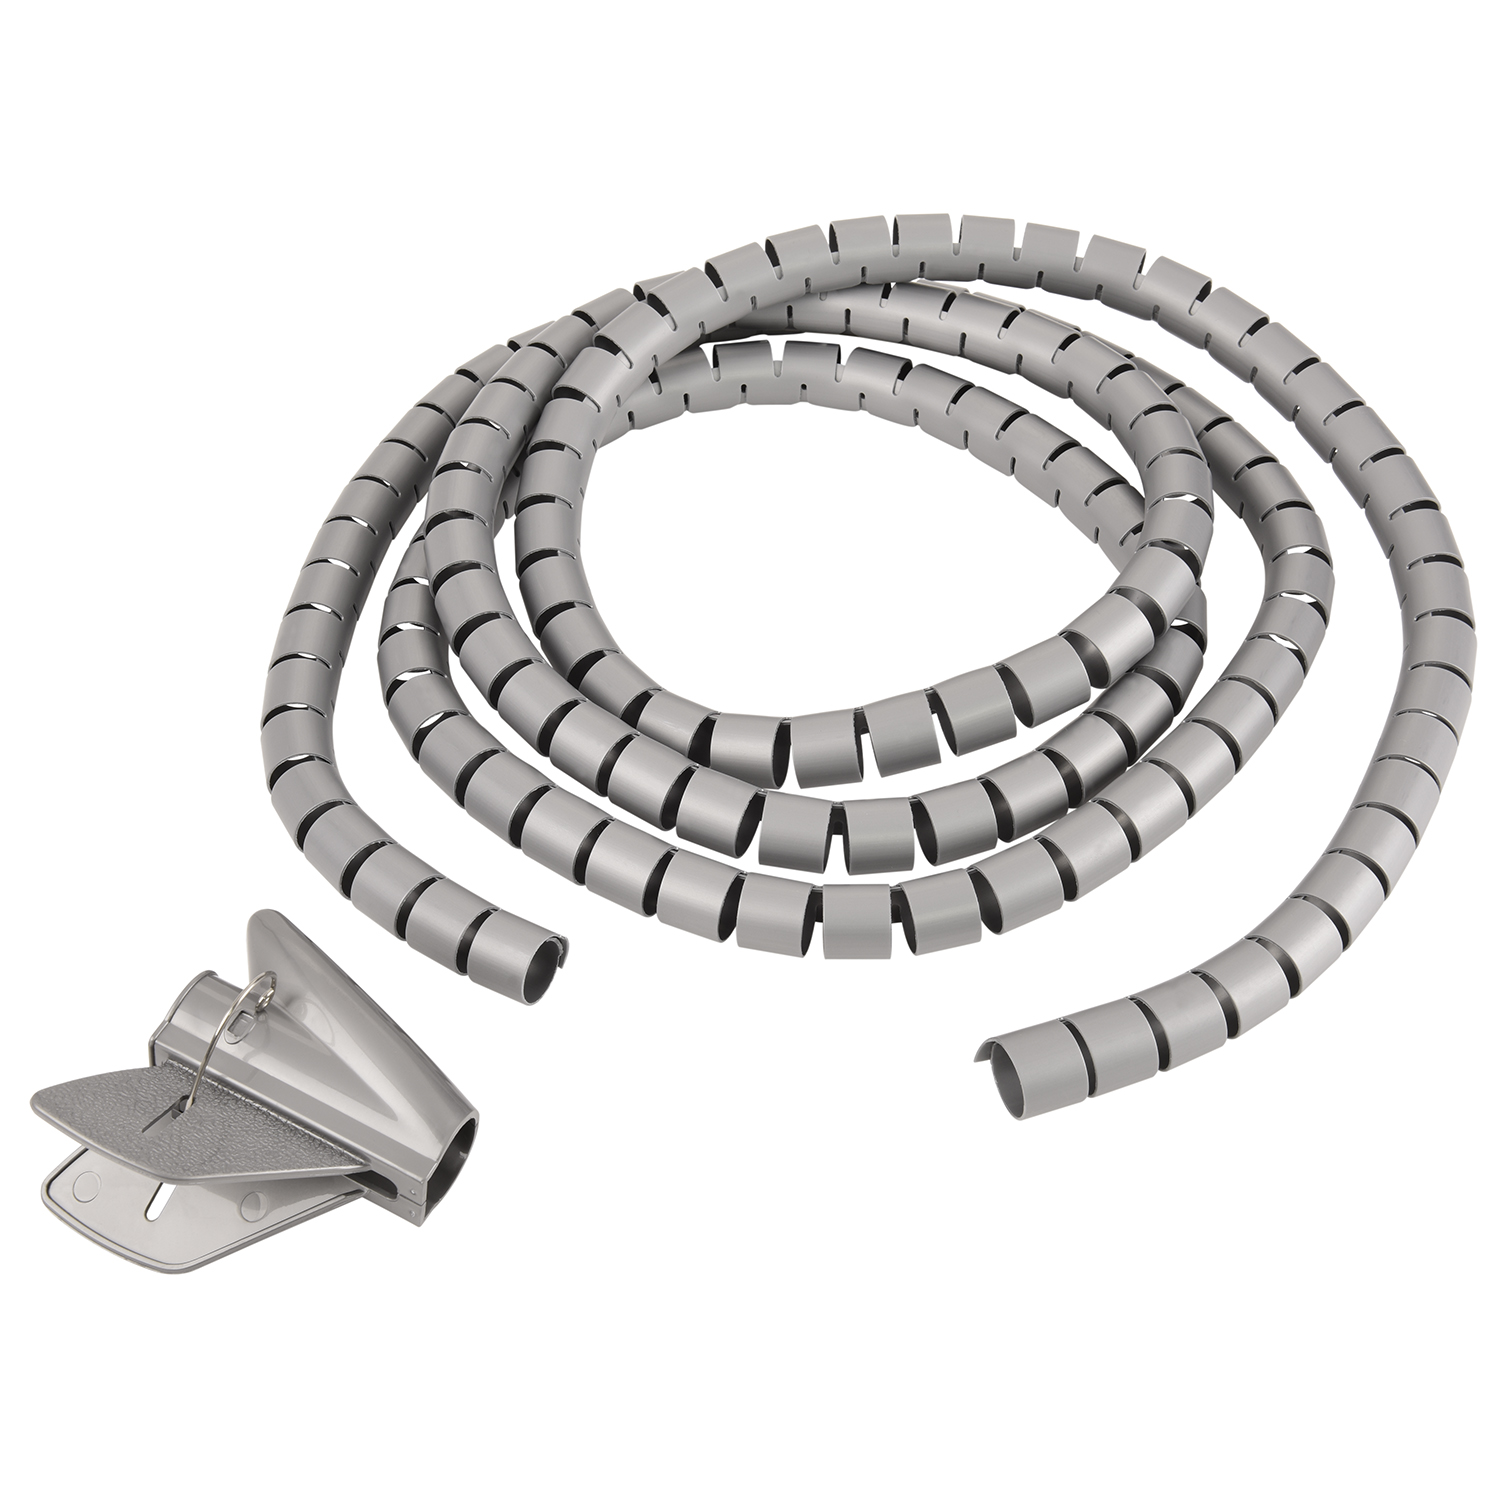 Einfädelhilfe, Kabelschlauch, TPFNET Premium Silber, 20mm, Silber Spiral-Kabelschlauch mit 5m